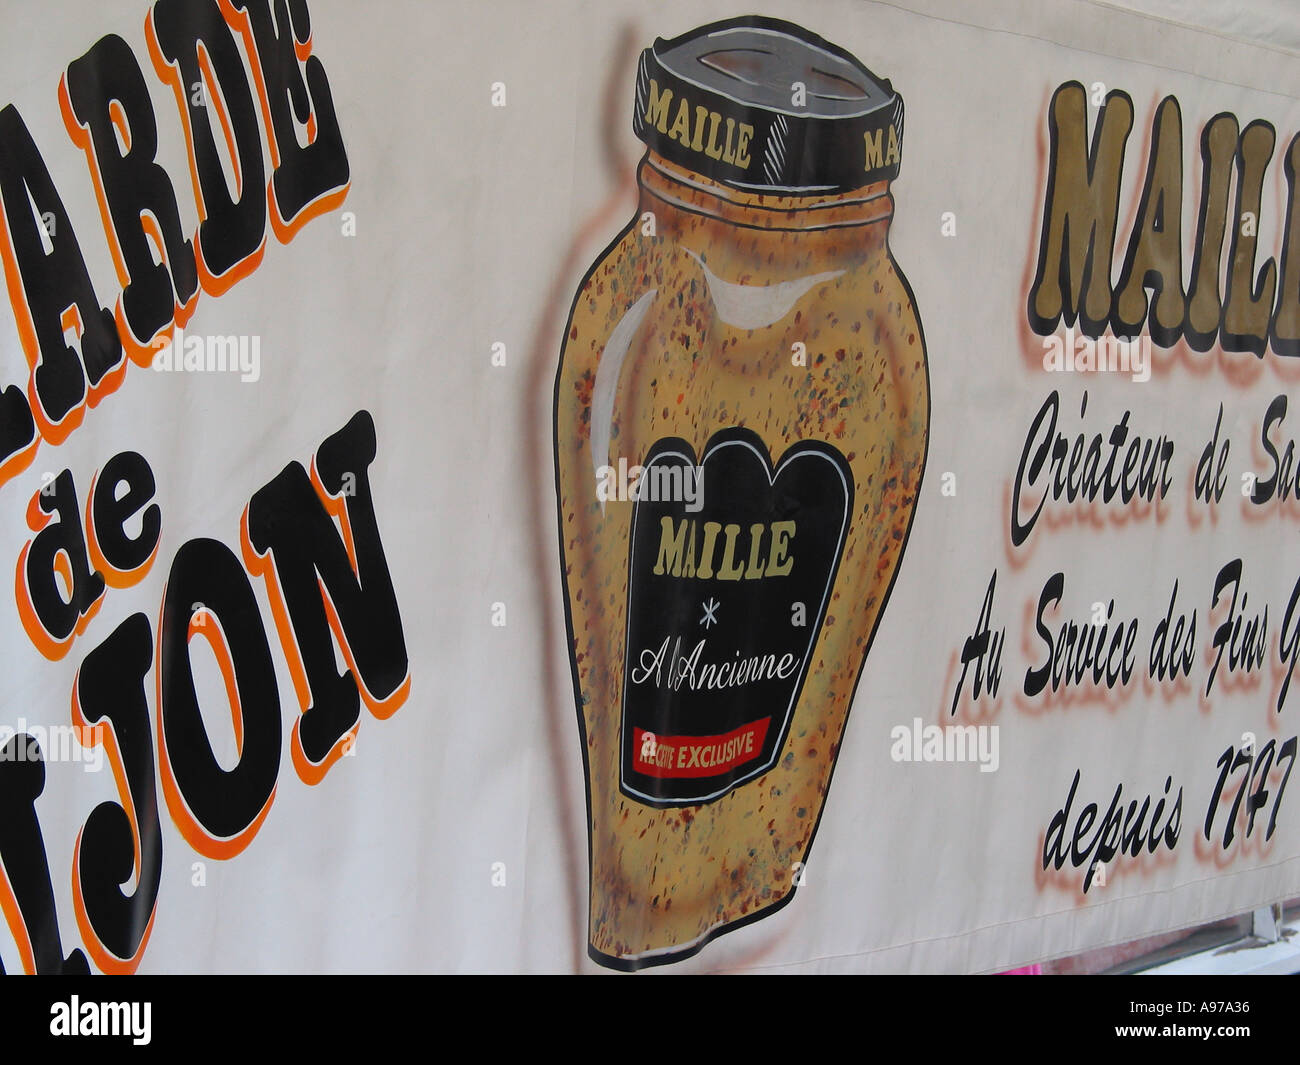 Maille, marchio francese di senape di Digione, esposto presso uno stand del mercato francese, in Francia Foto Stock